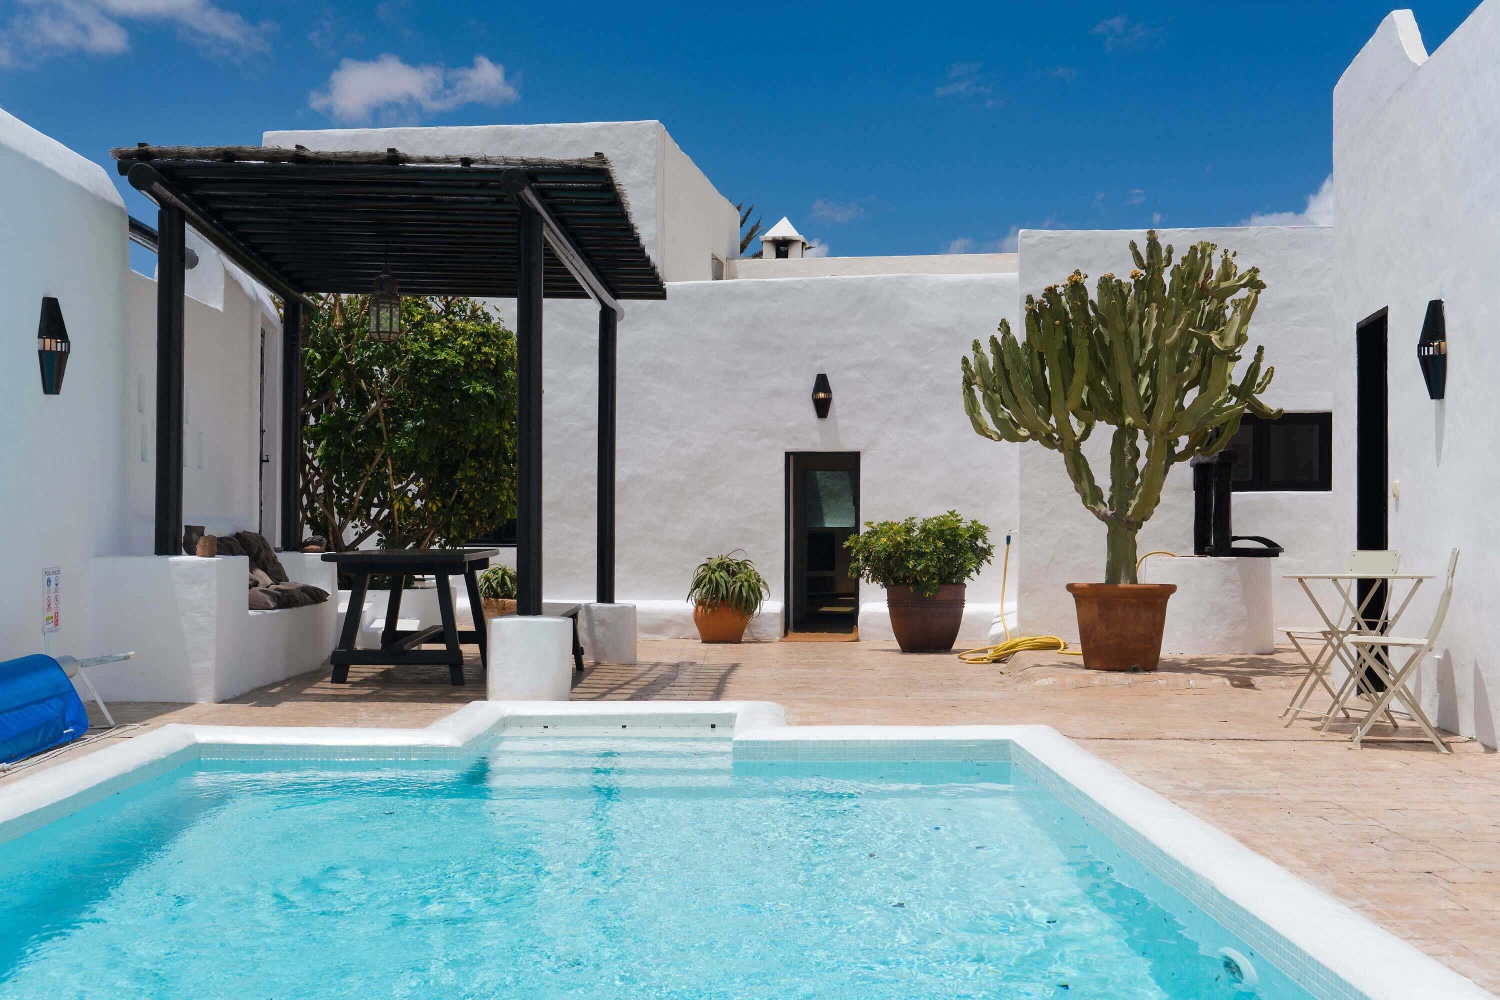 Casa de lujo con piscina privada climatizable y una ubicación ideal para explorar el resto de Lanzarote